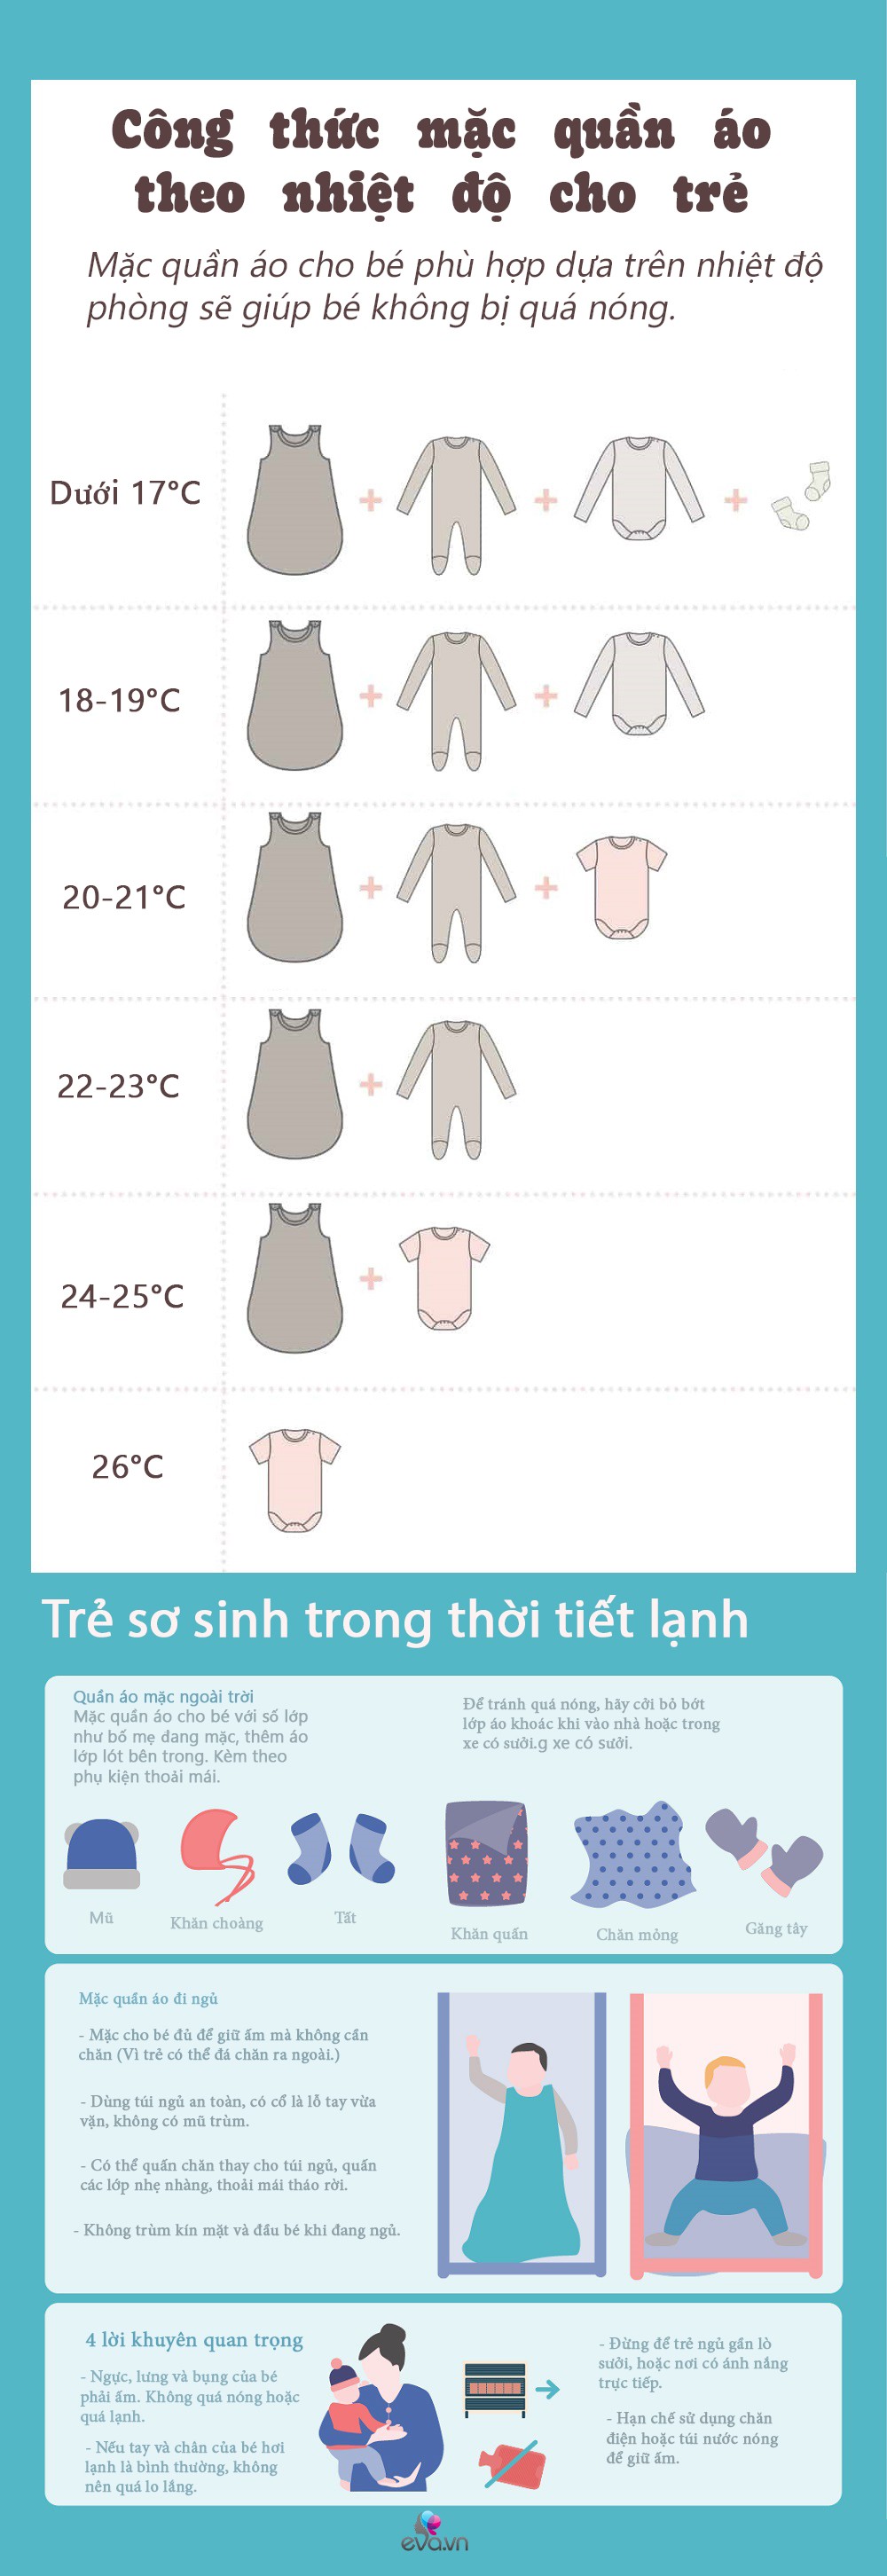 Infographic: Công thức mặc quần áo cho trẻ sơ sinh đủ ấm theo nhiệt độ thời tiết, con ngủ đêm không ốm, ho - 2